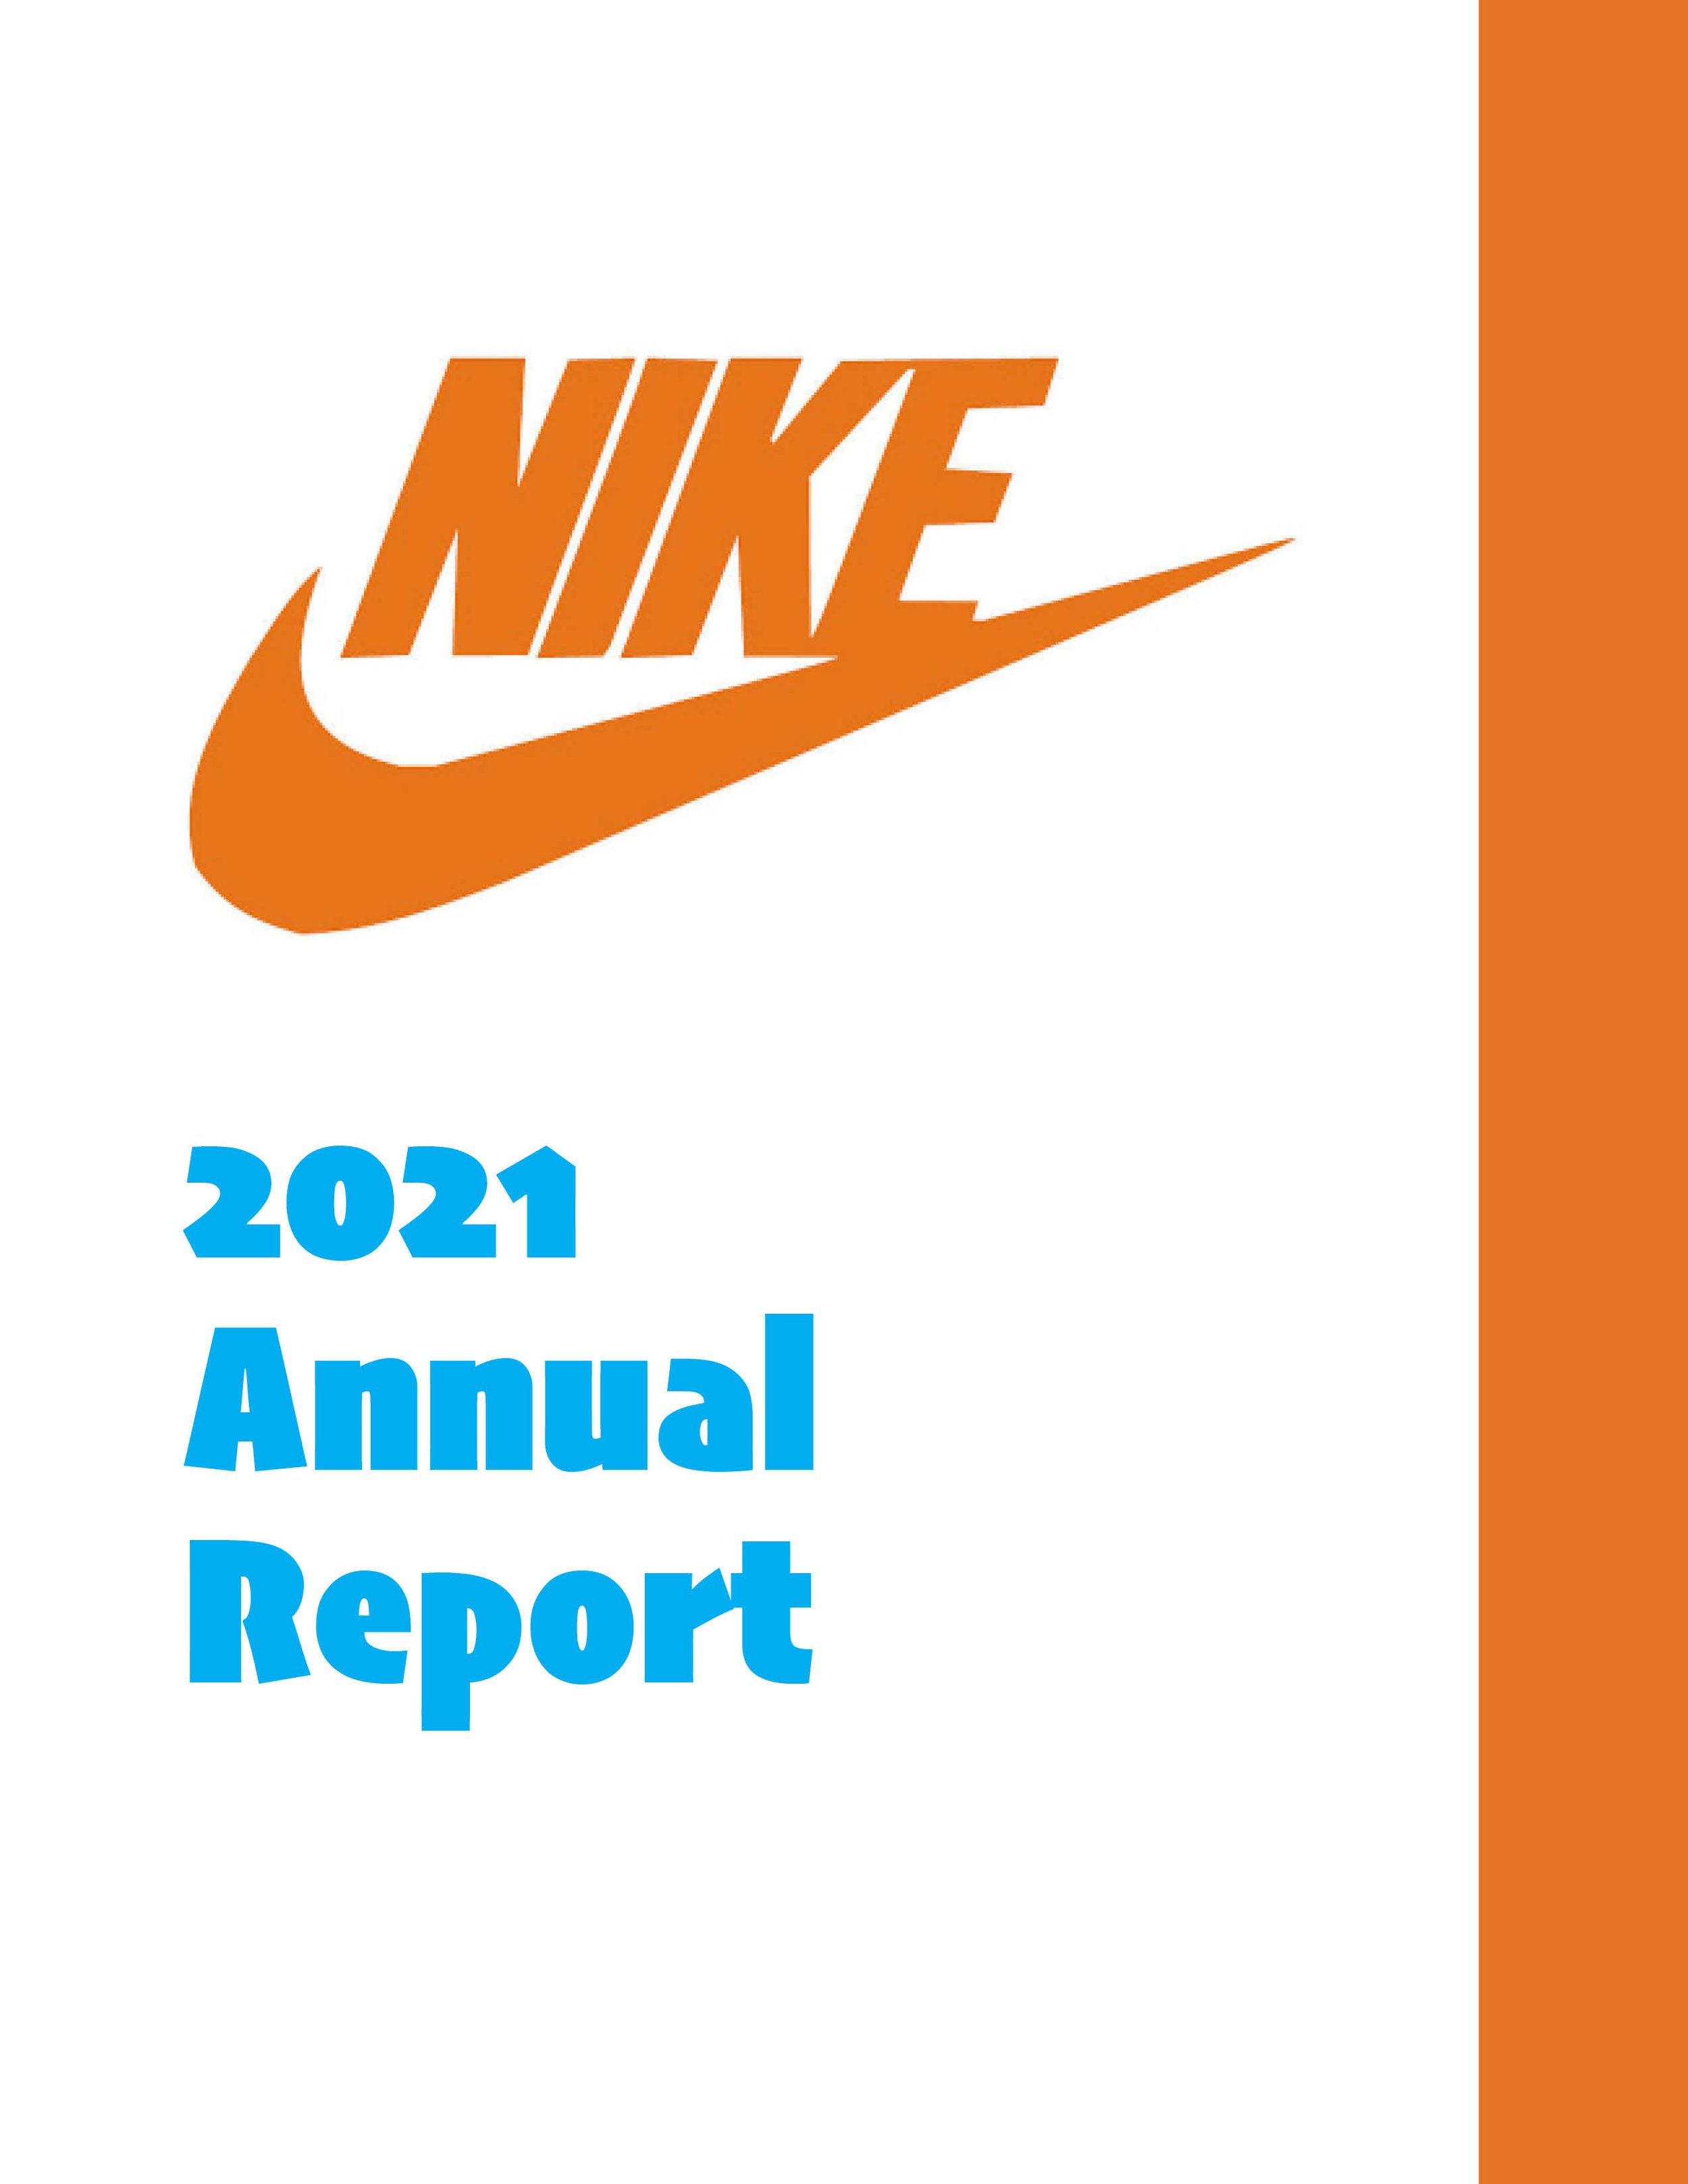 Annual Report Nike Katie Rose